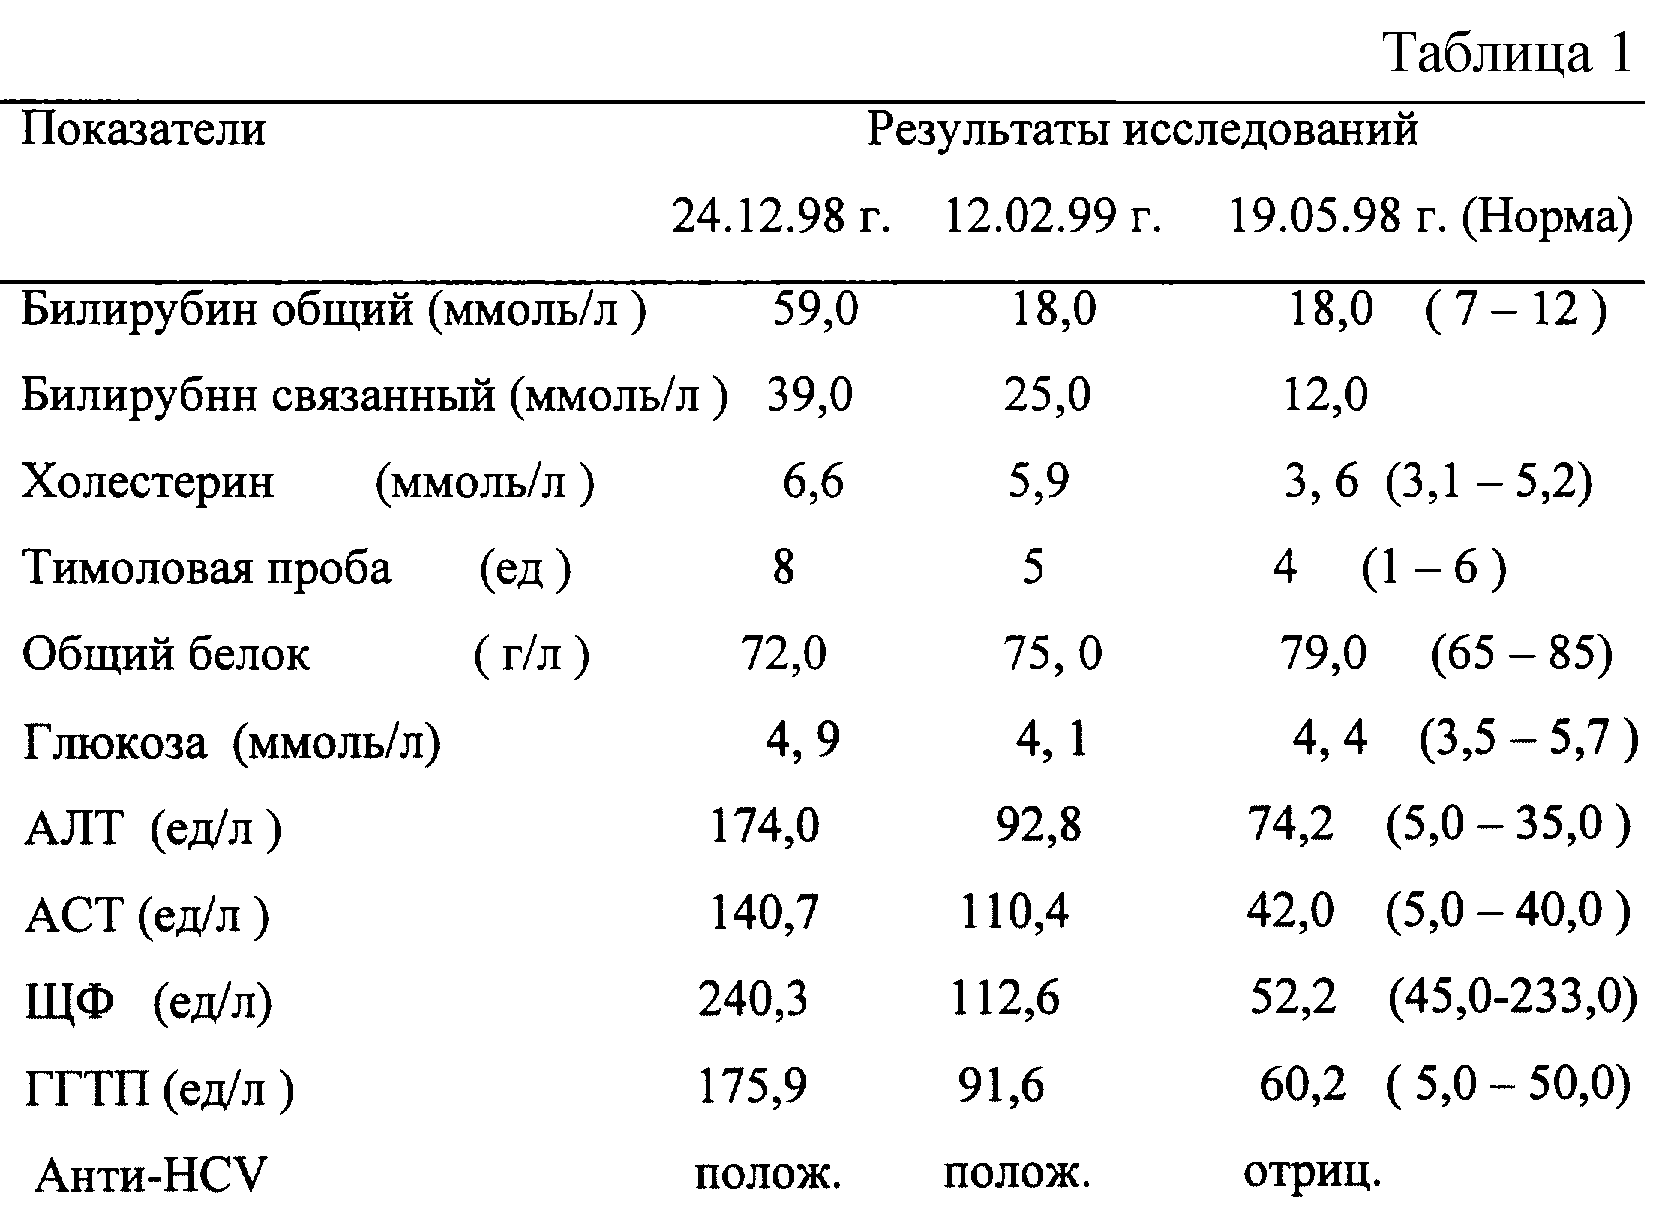 Таблица общего билирубина в крови у женщин